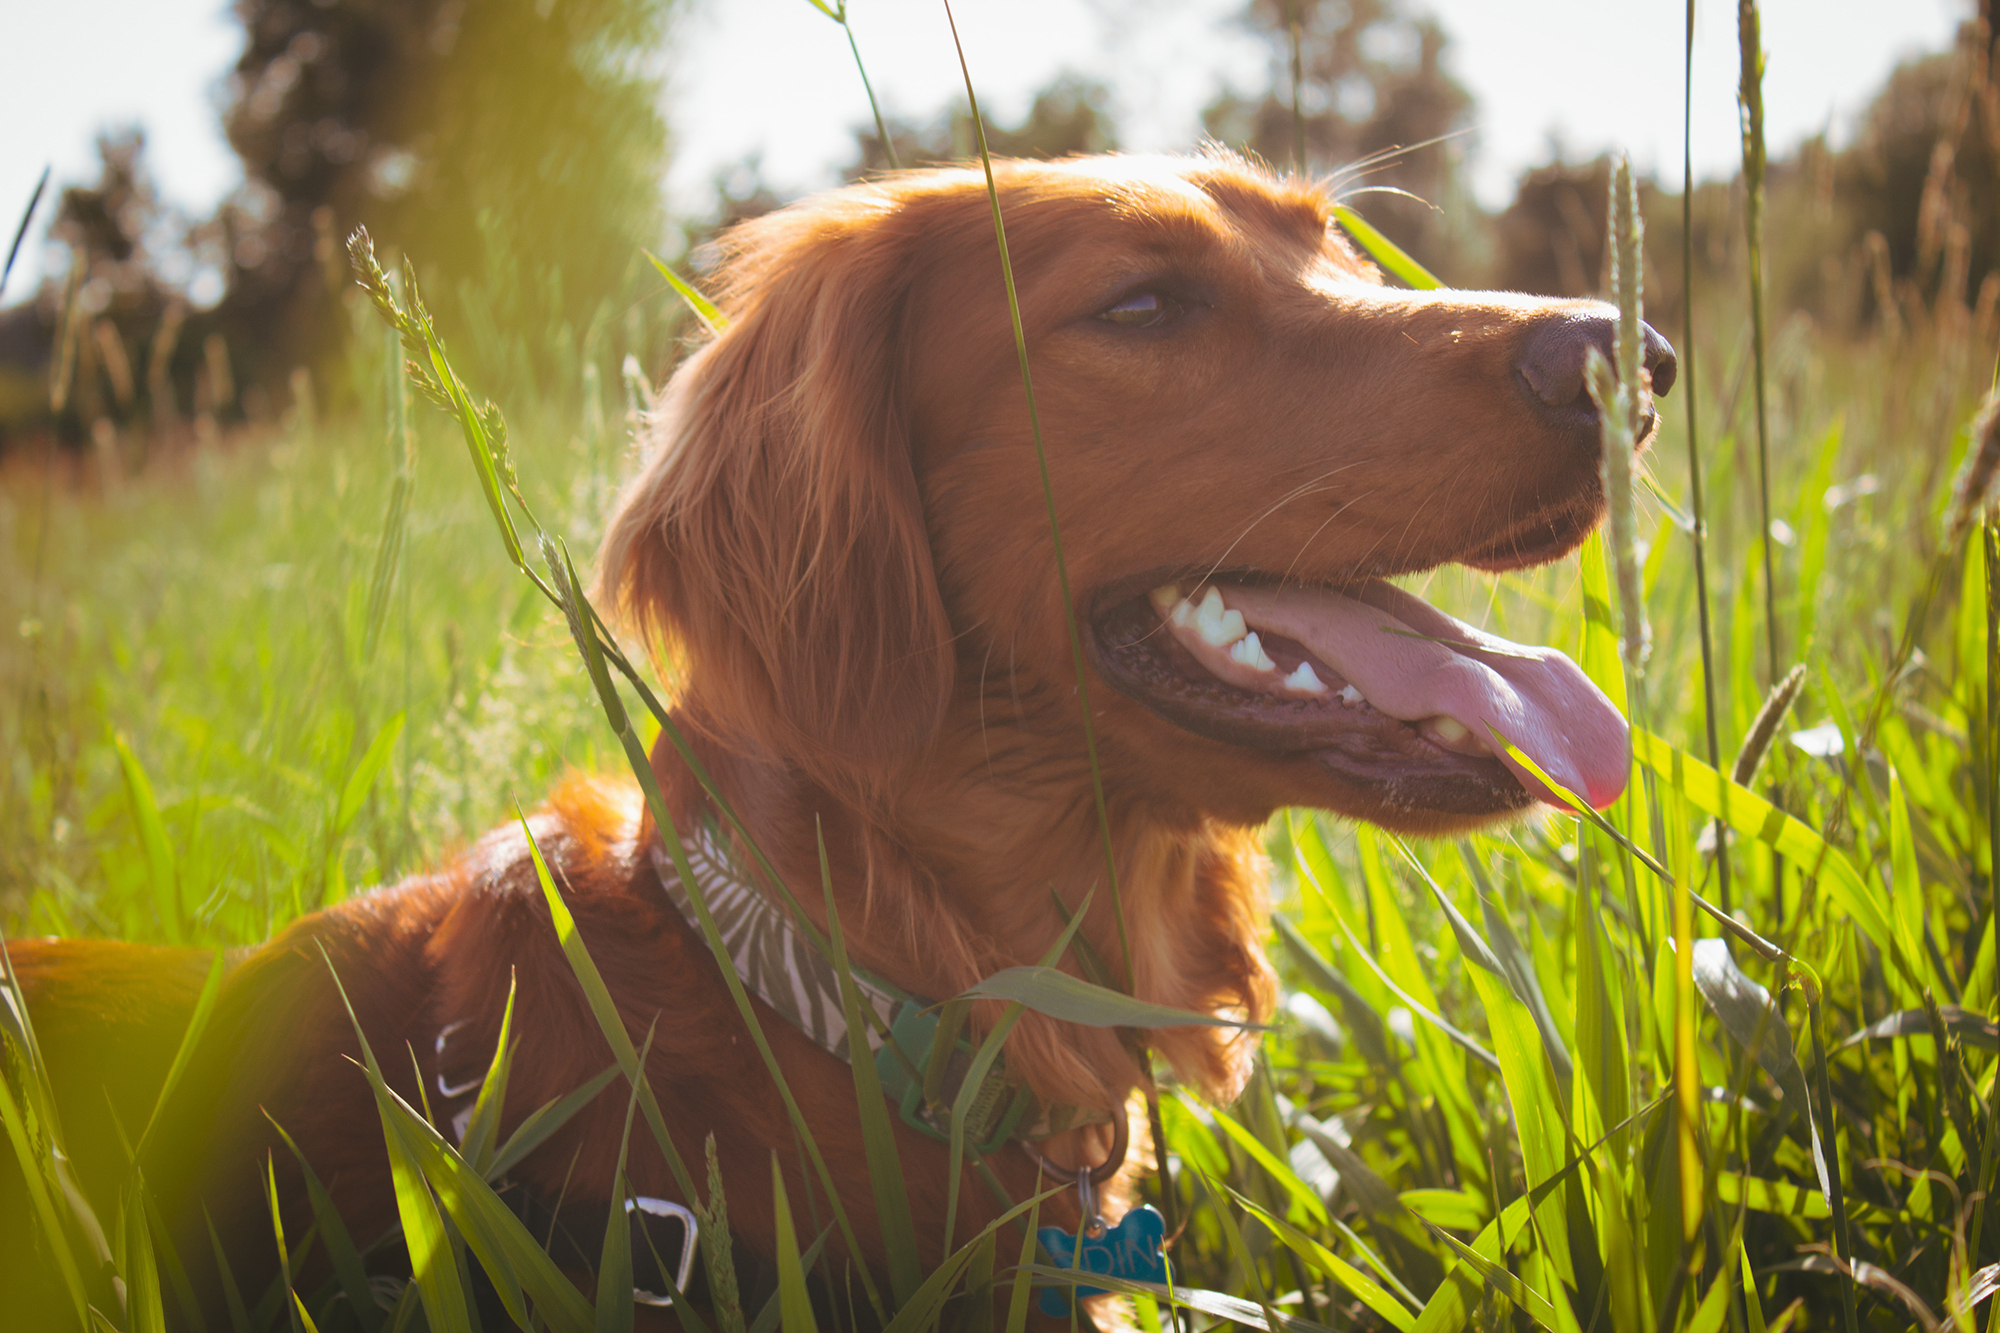 Allergia kutyáknál - A magas fű is irritálhatja a bőrt, allergiás reakciót okozhat